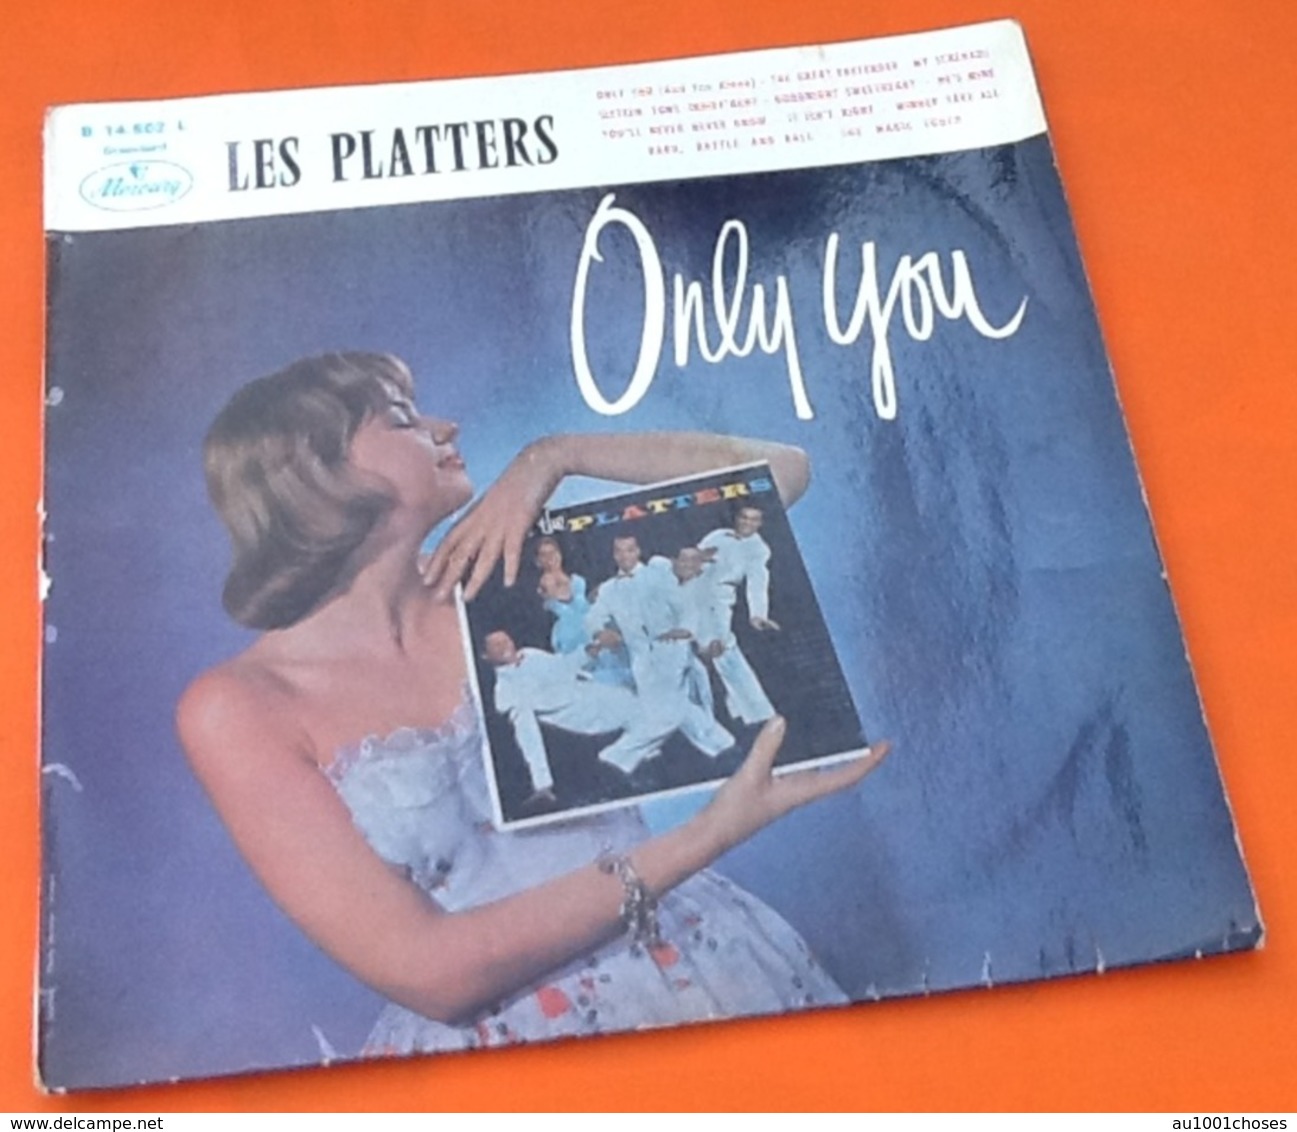 Rare Vinyle 33 Tours   The Platters Only You Année 60 Mercury B.14.502 L Standart - Soul - R&B